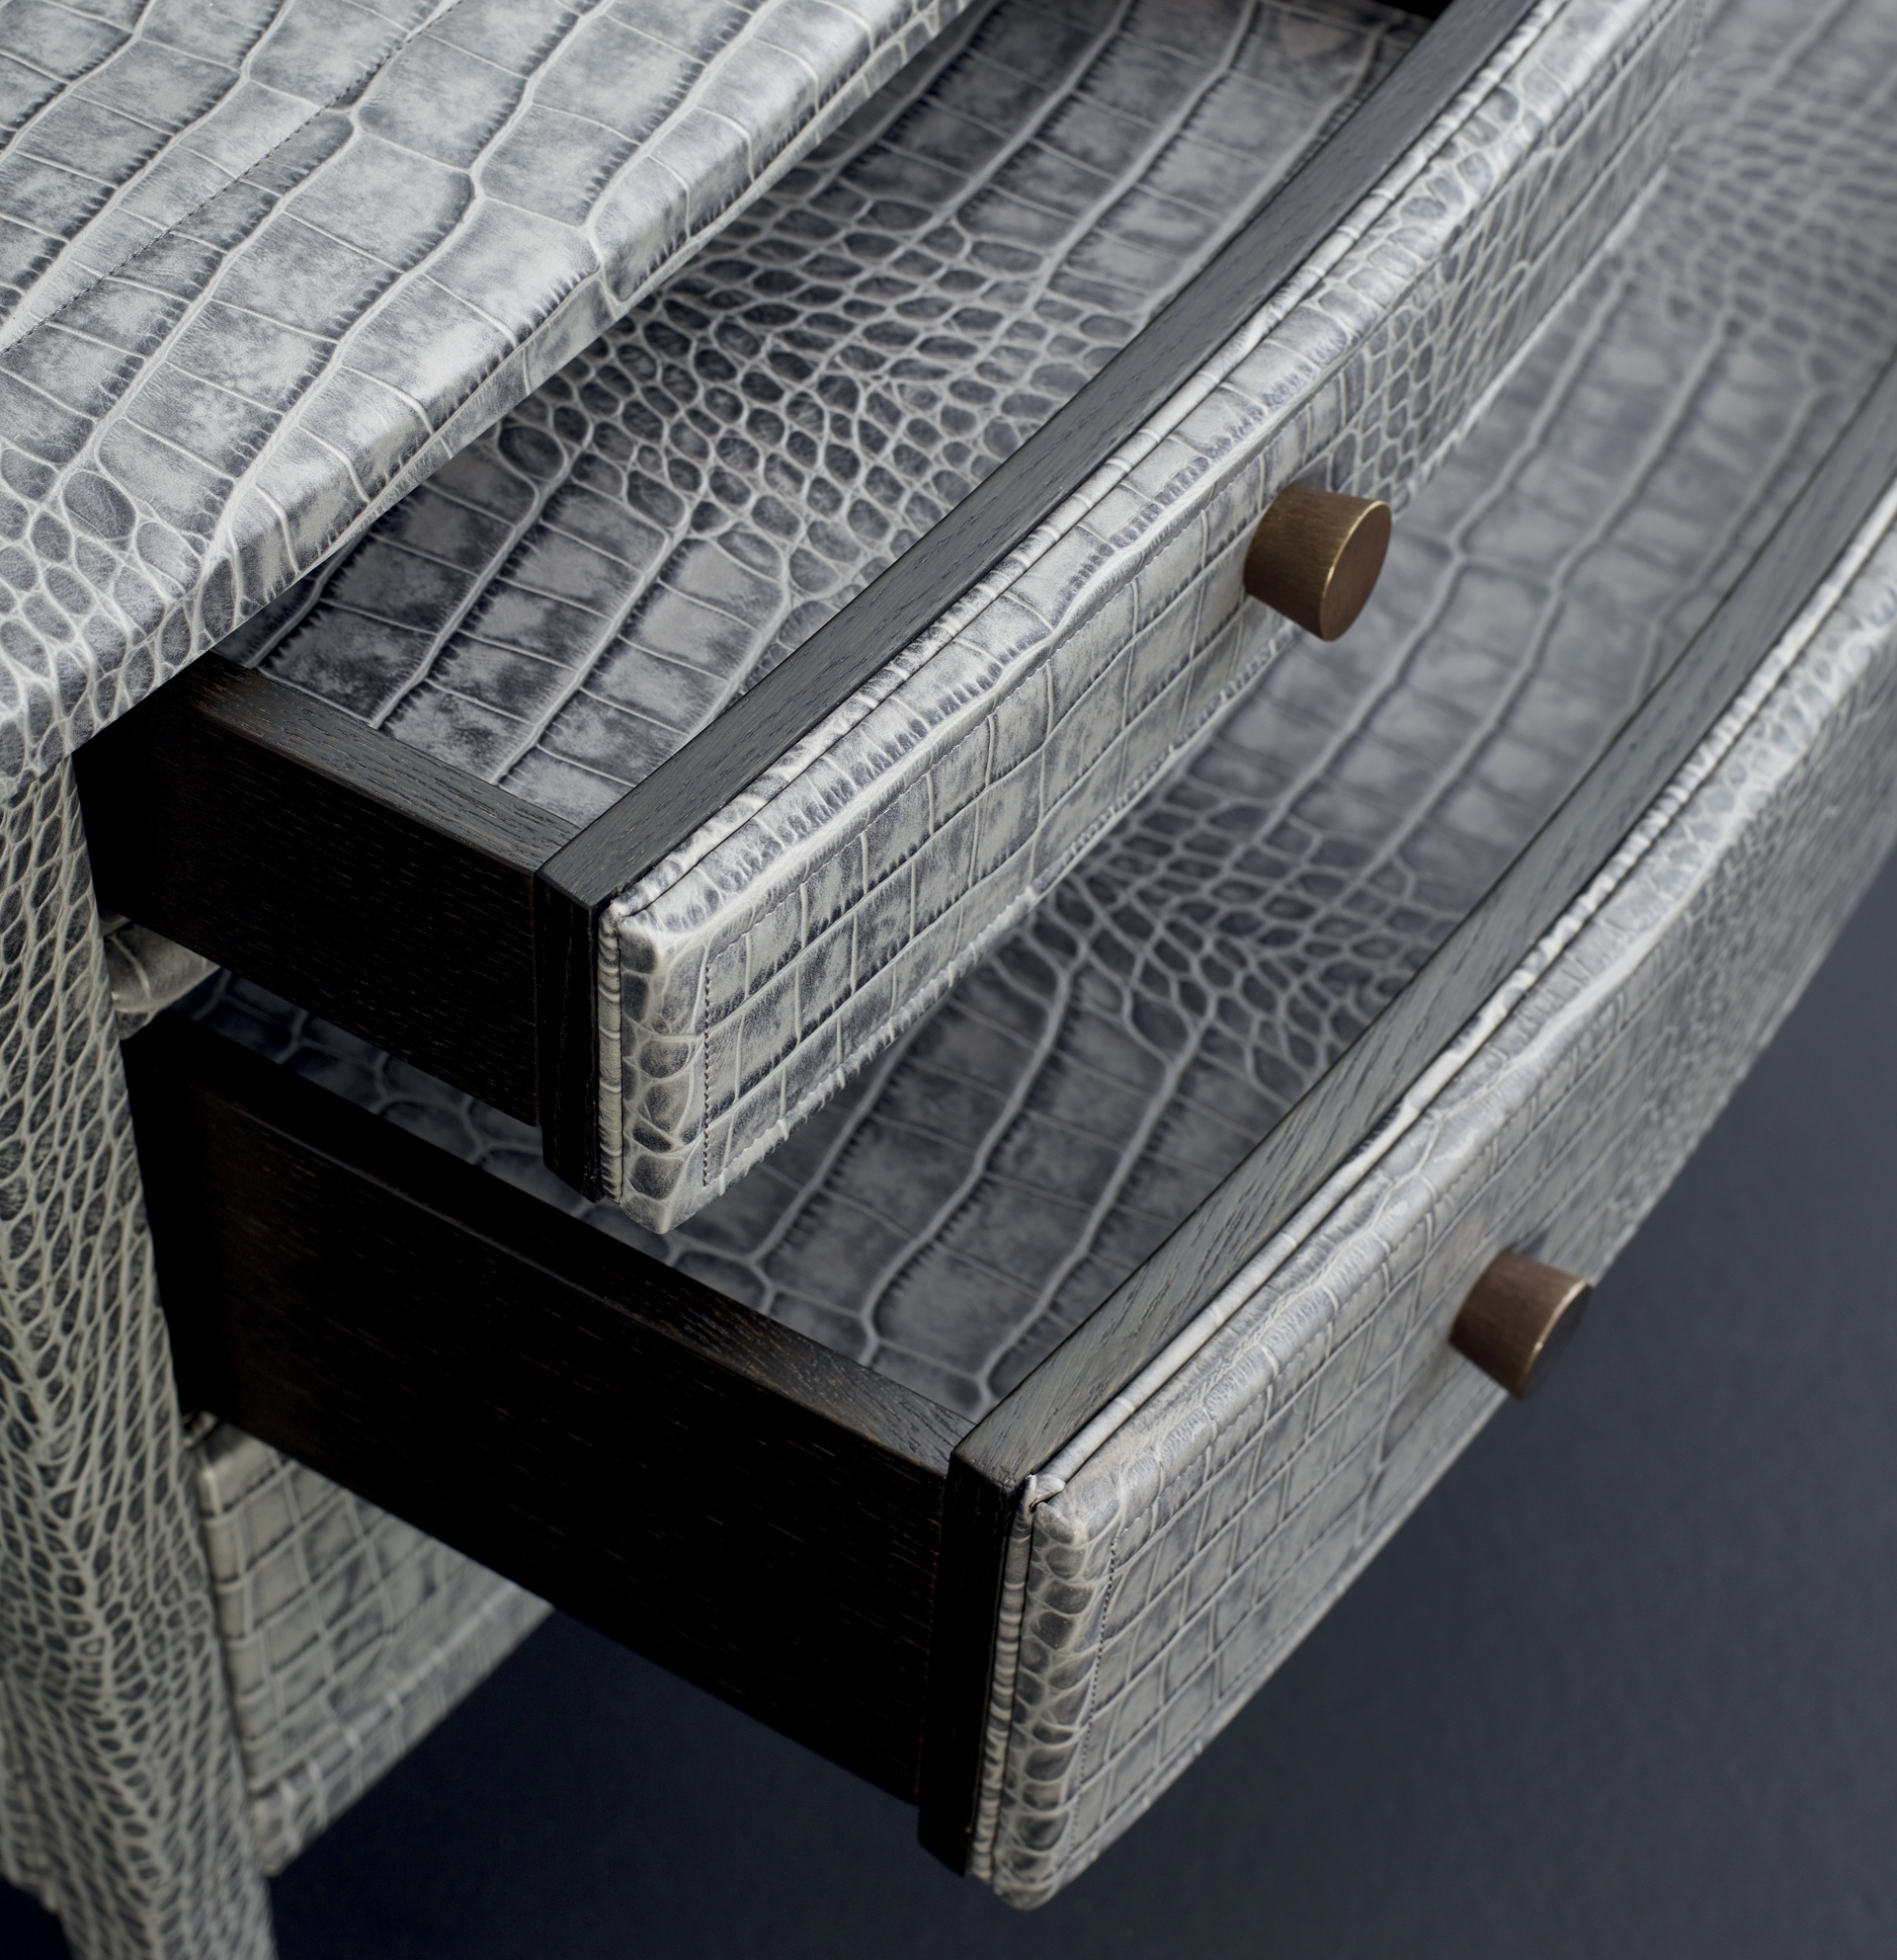 Cassettiera '700 è una cassettiera in legno rivestita in pelle o galuchat con pomoli in bronzo, del catalogo di Promemoria | Promemoria